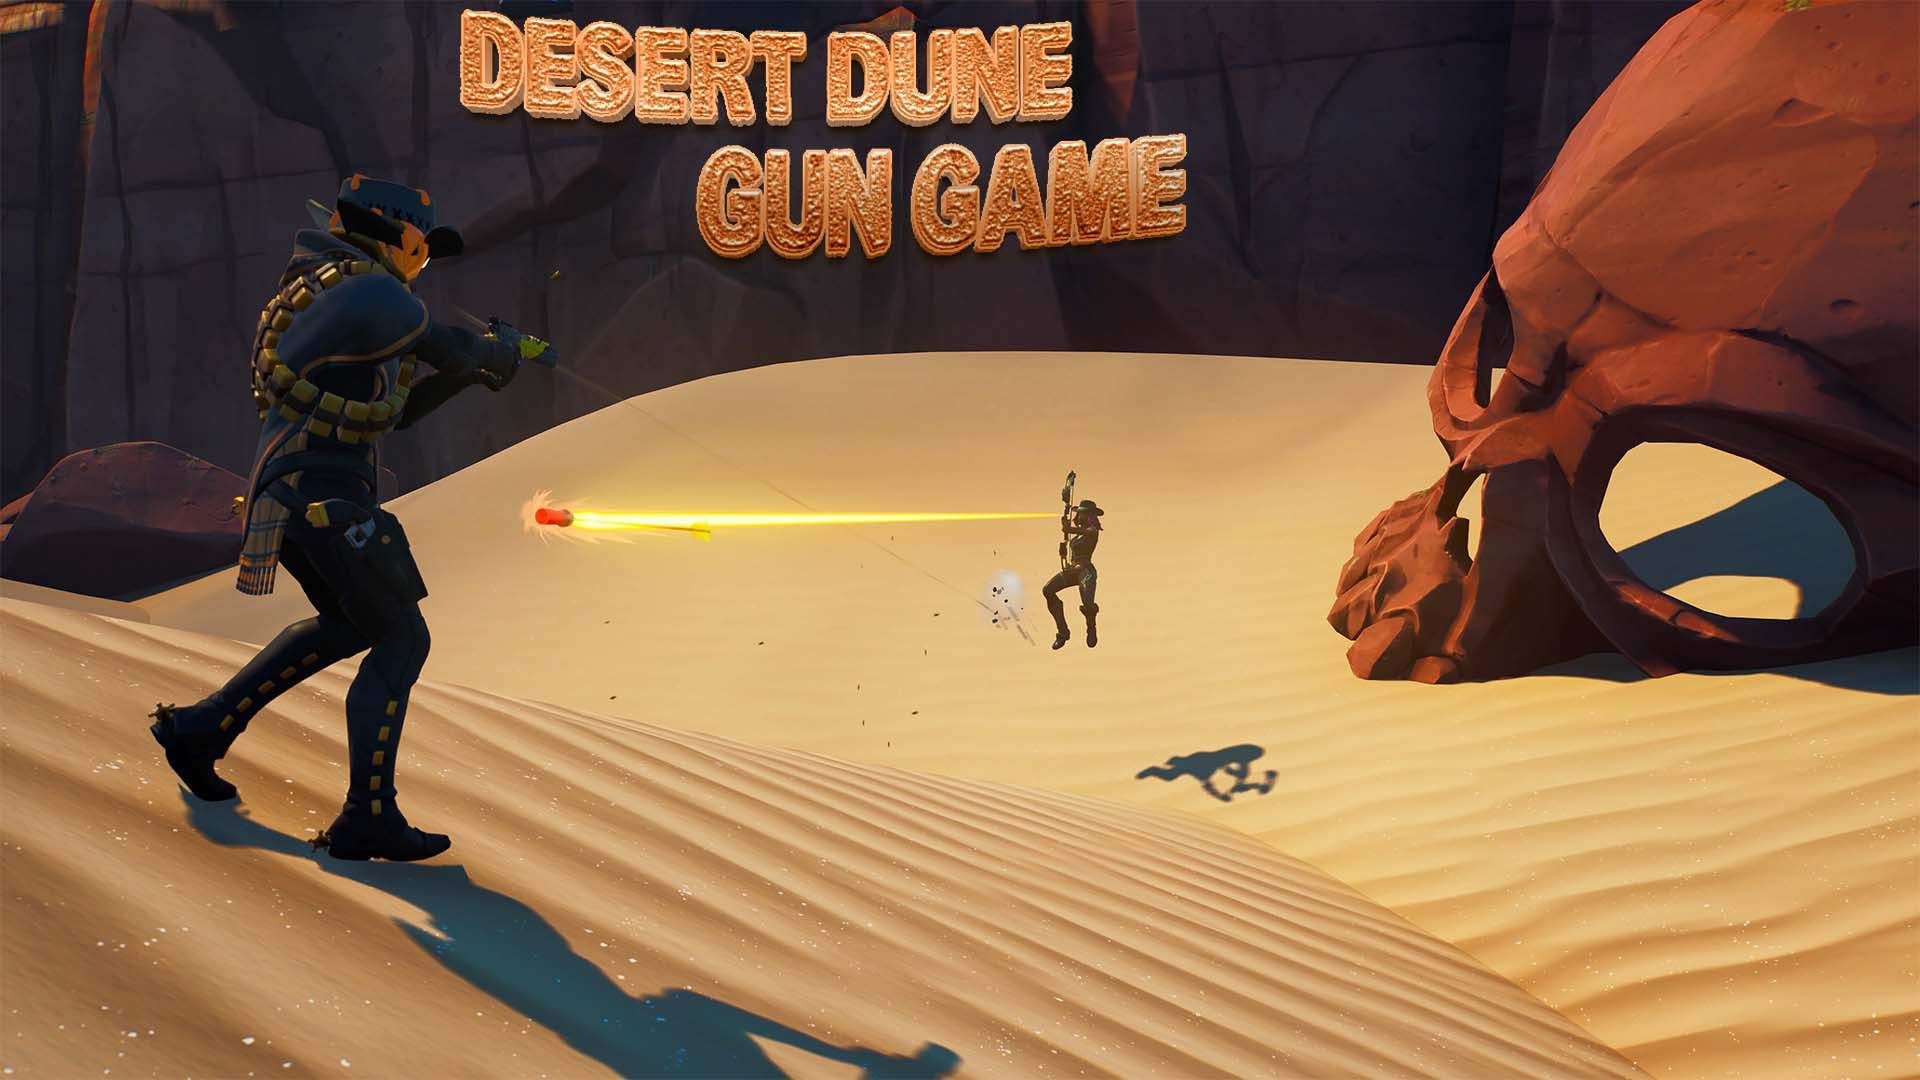 DESERT DUNE - GUN GAME